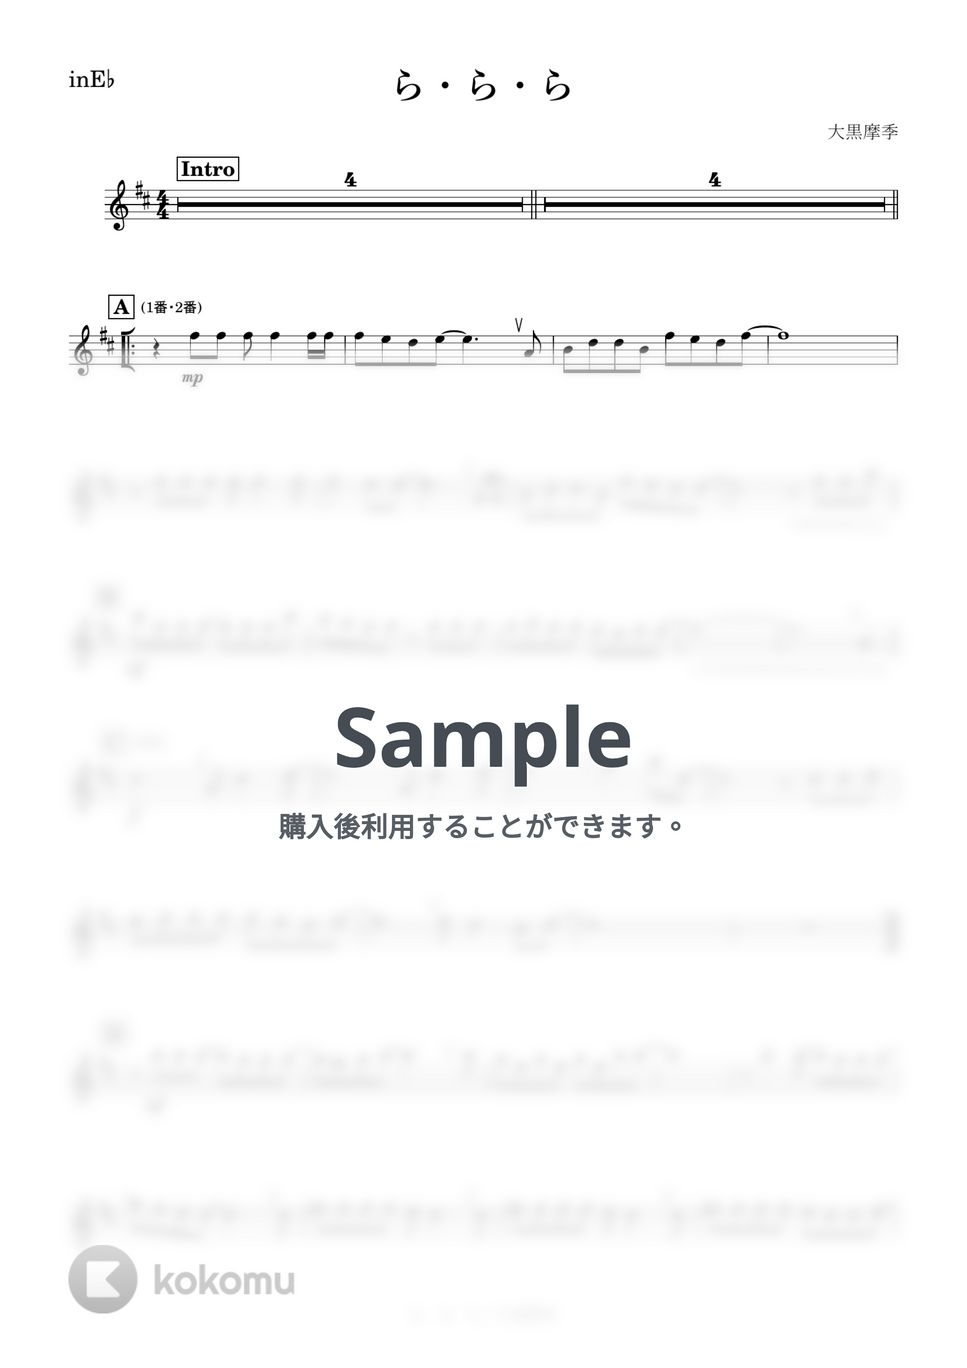 大黒摩季 - ら・ら・ら (E♭) by kanamusic